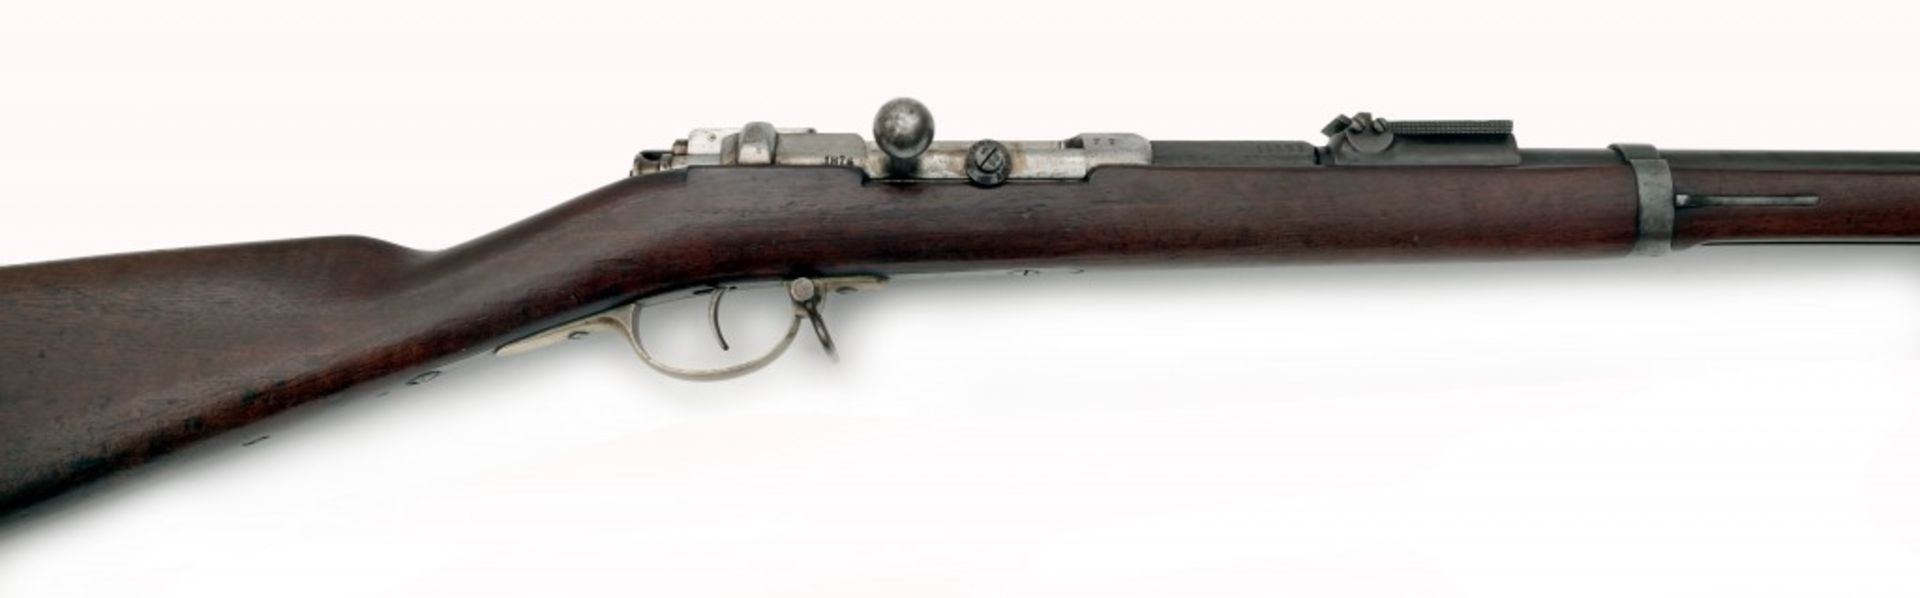 Infanteriegewehr M 1871, Mauser